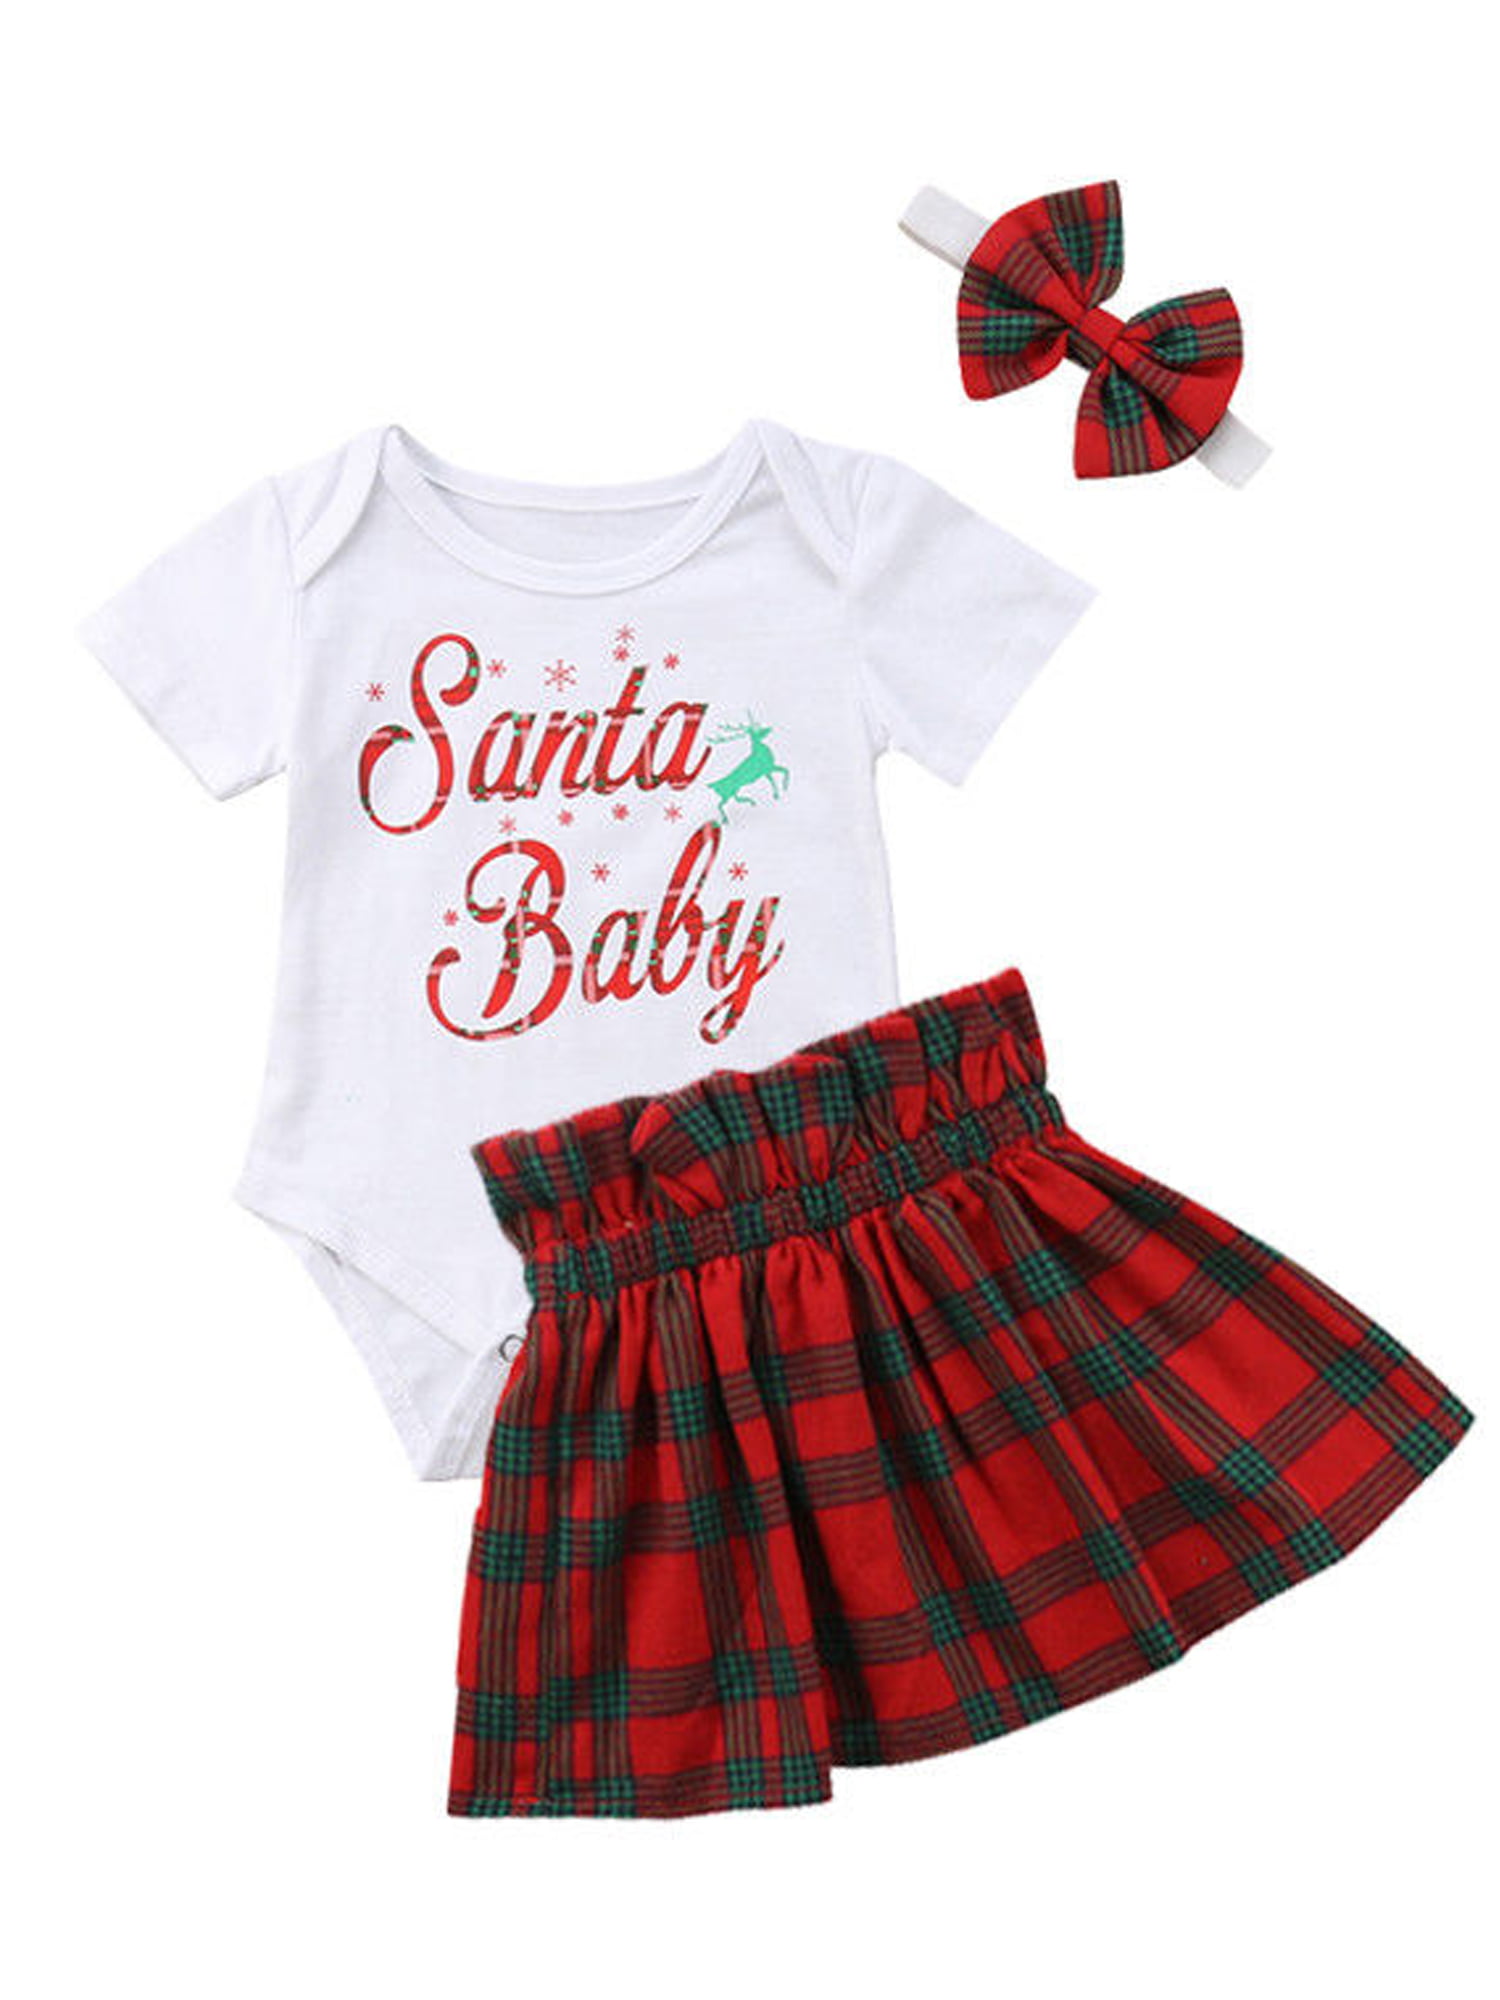 santa baby girl outfit